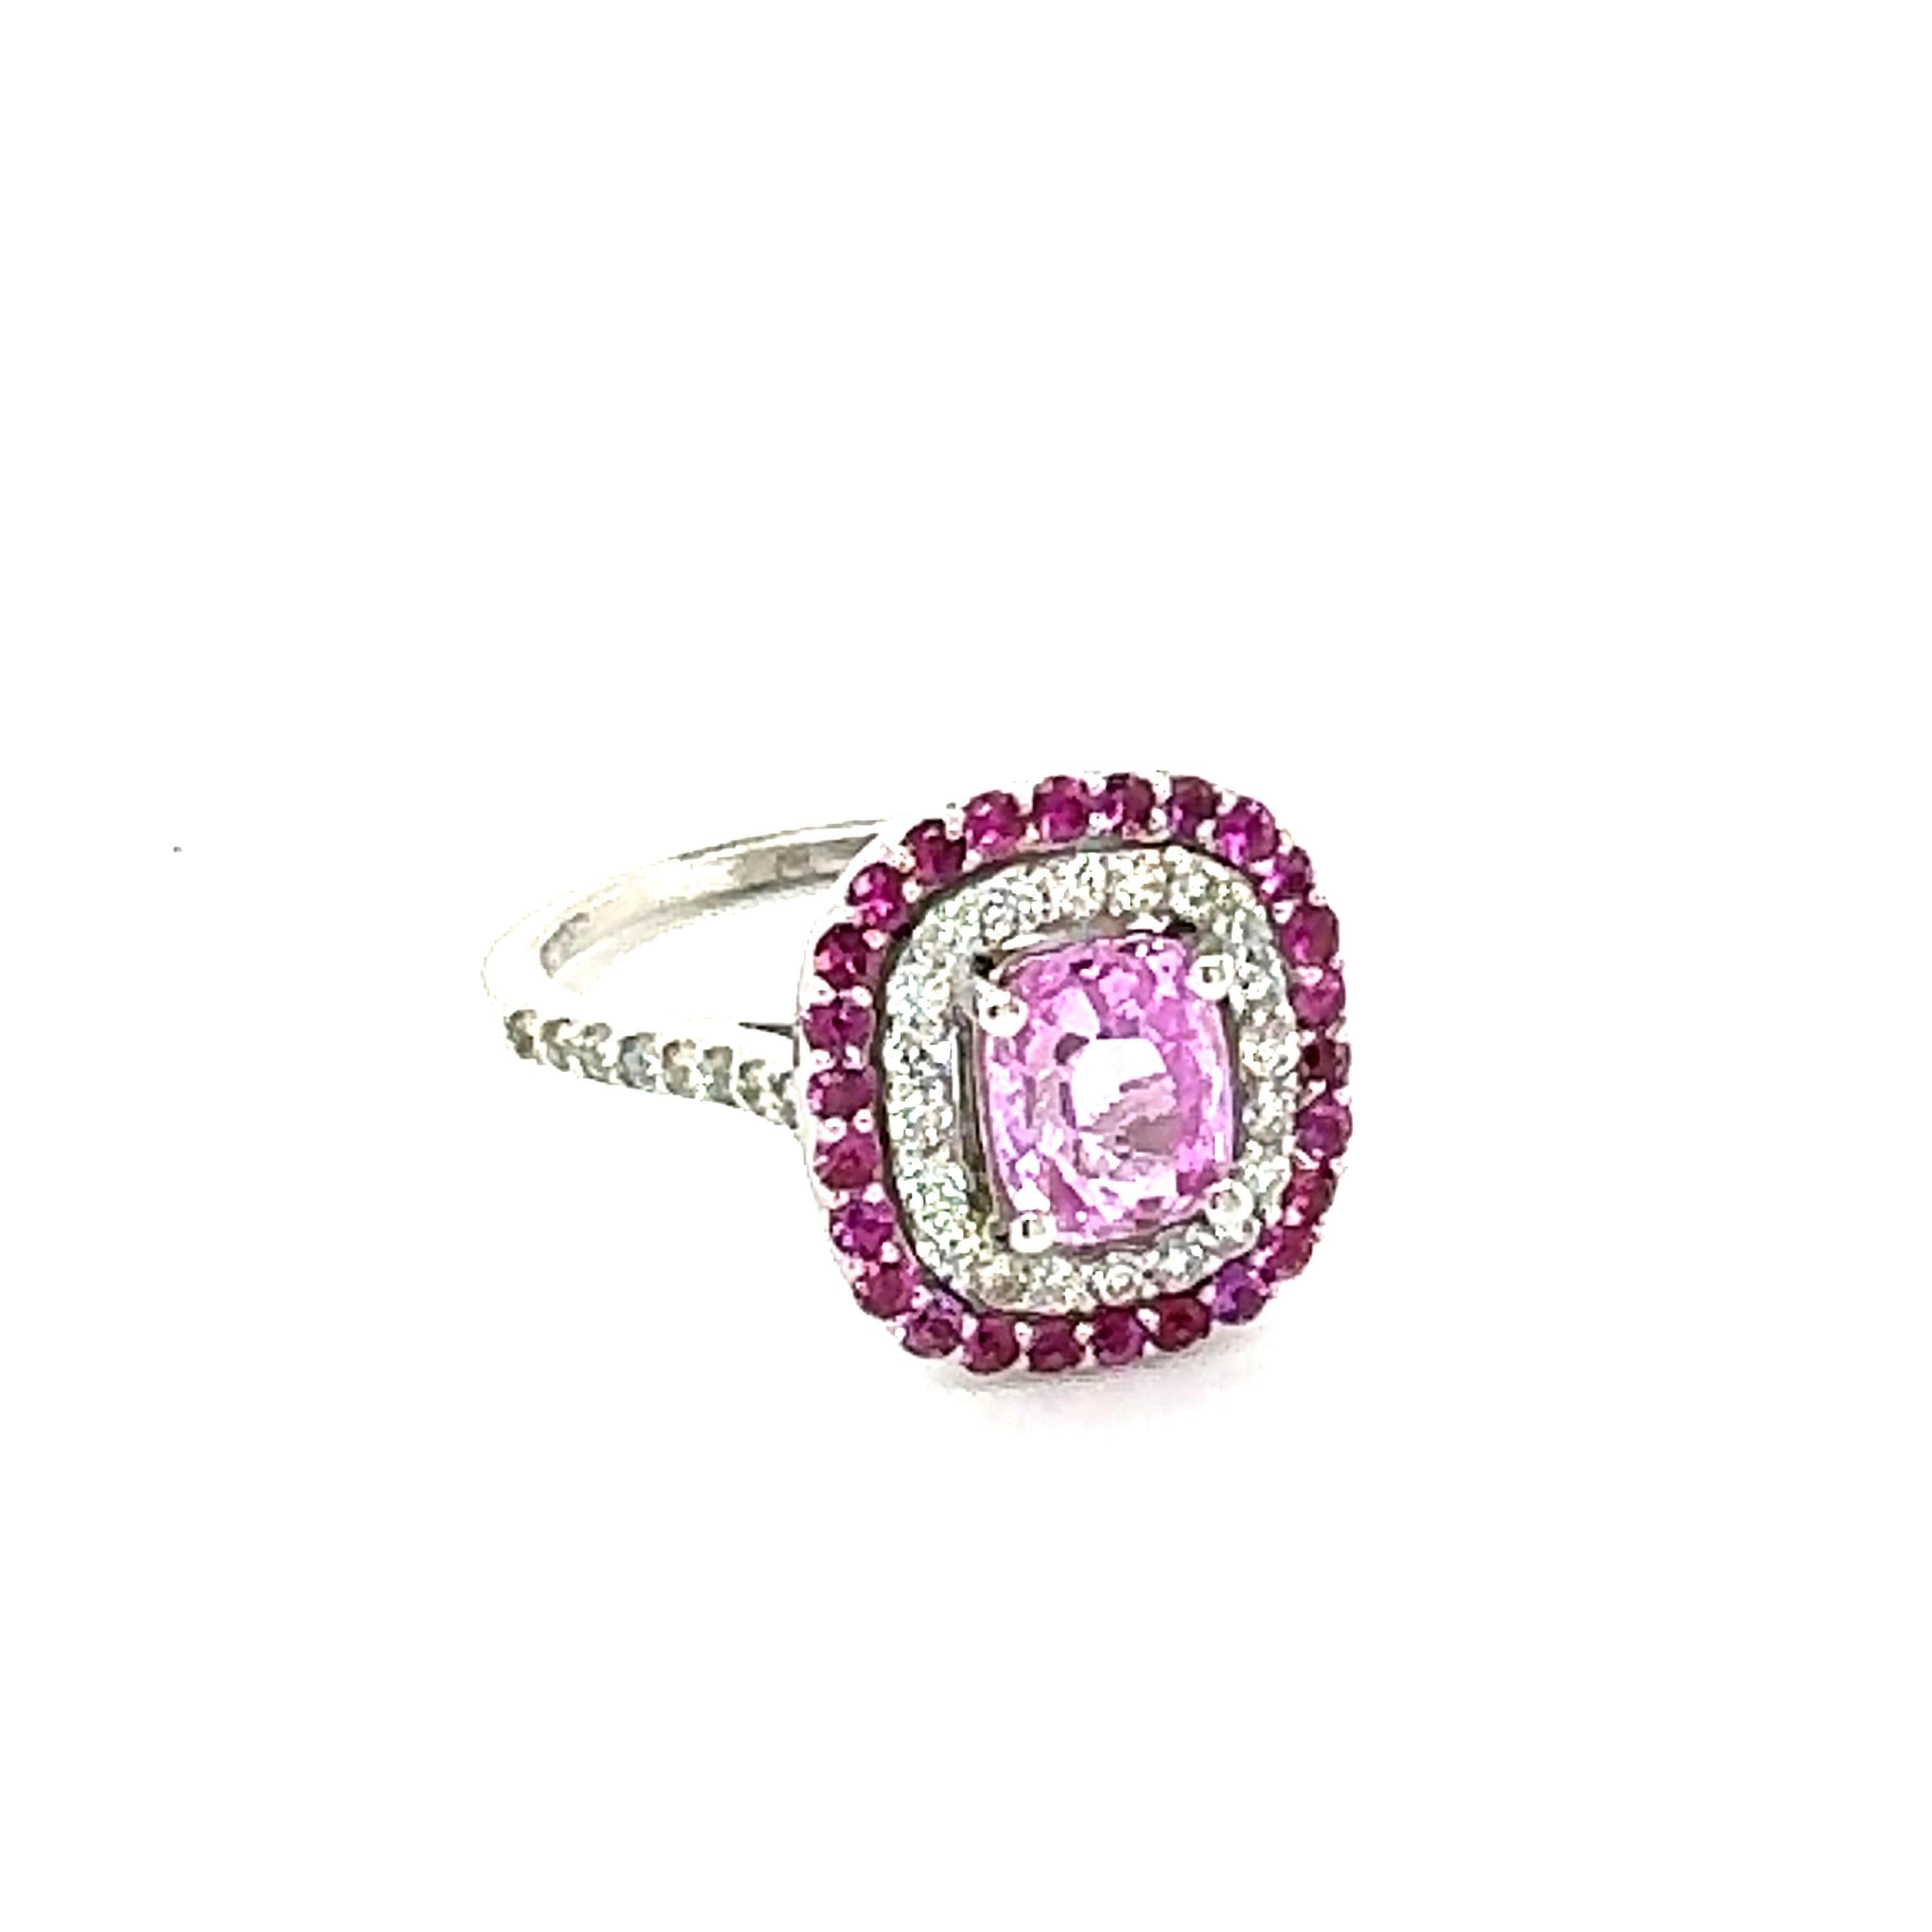 Einfach der eleganteste und schönste Verlobungs- oder Ehering mit rosa Saphir und Diamant!
GIA-zertifizierter Weißgoldring mit 2,32 Karat rosa Saphir im Kissenschliff und Diamant im Kissenschliff

Das Zentrum Cushion Cut Pink Sapphire ist 1,47 Karat